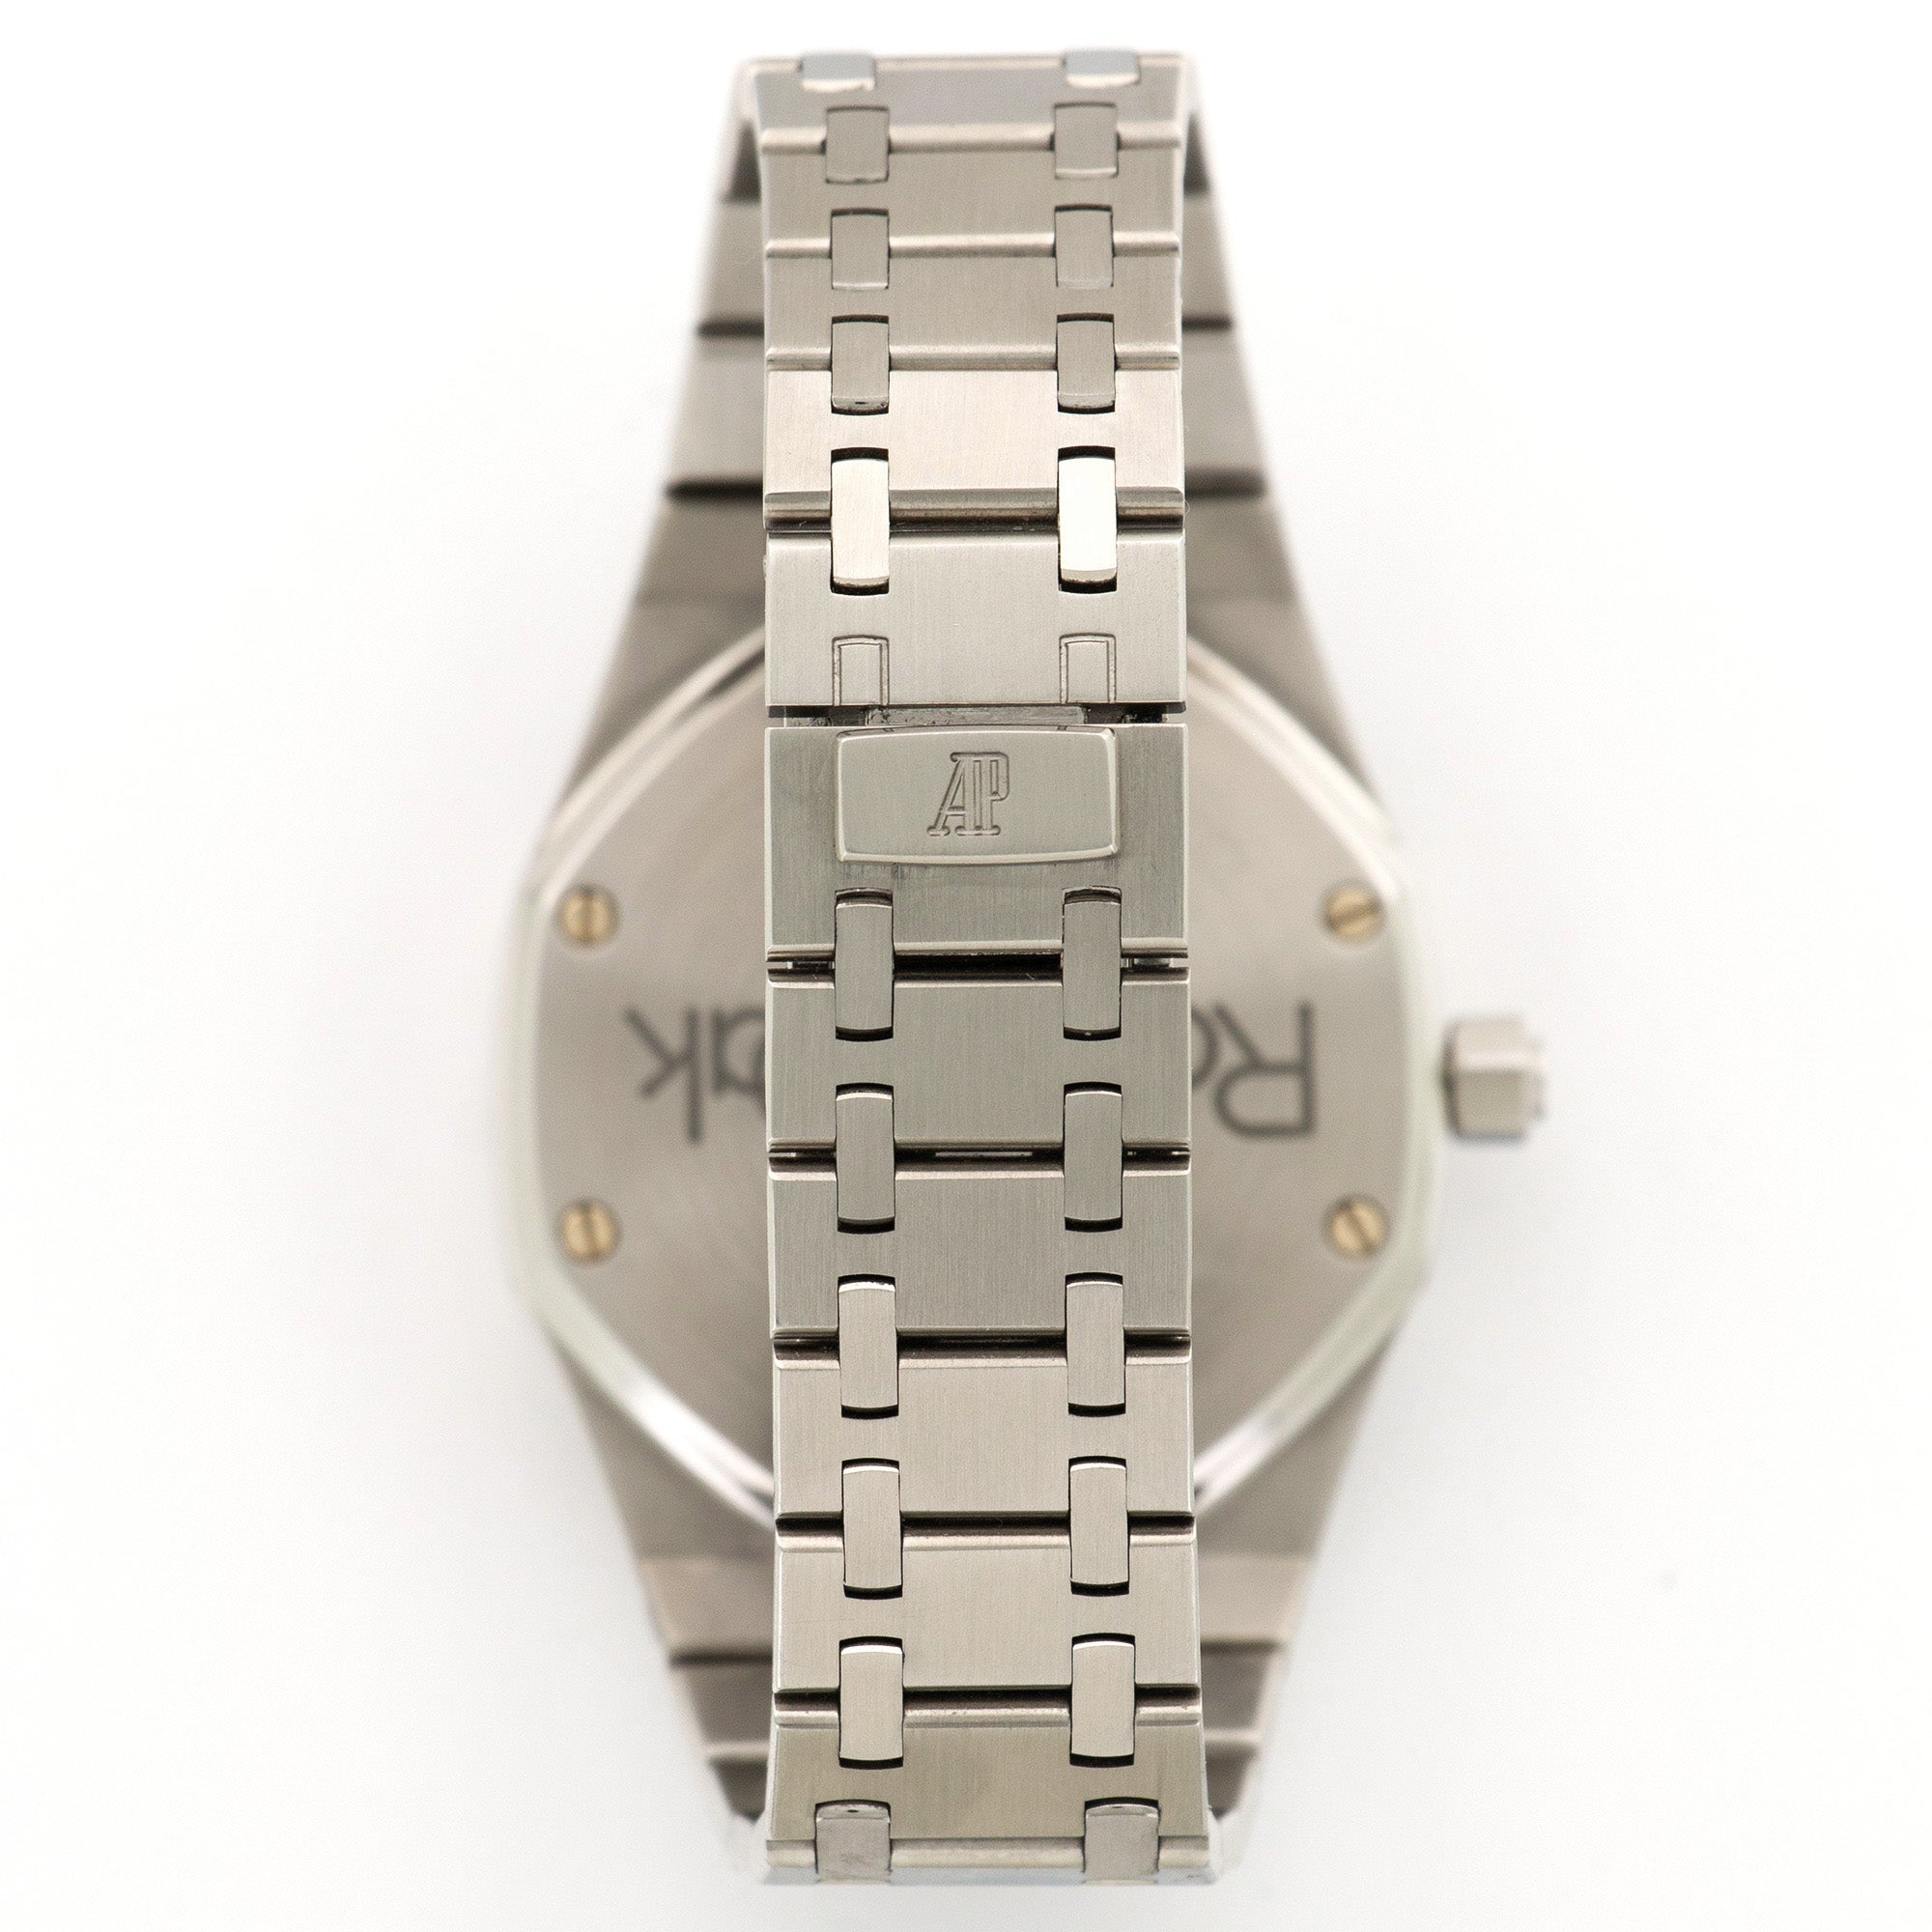 Audemars Piguet - Audemars Piguet Royal Oak Dual Time Watch Ref. 25730 - The Keystone Watches